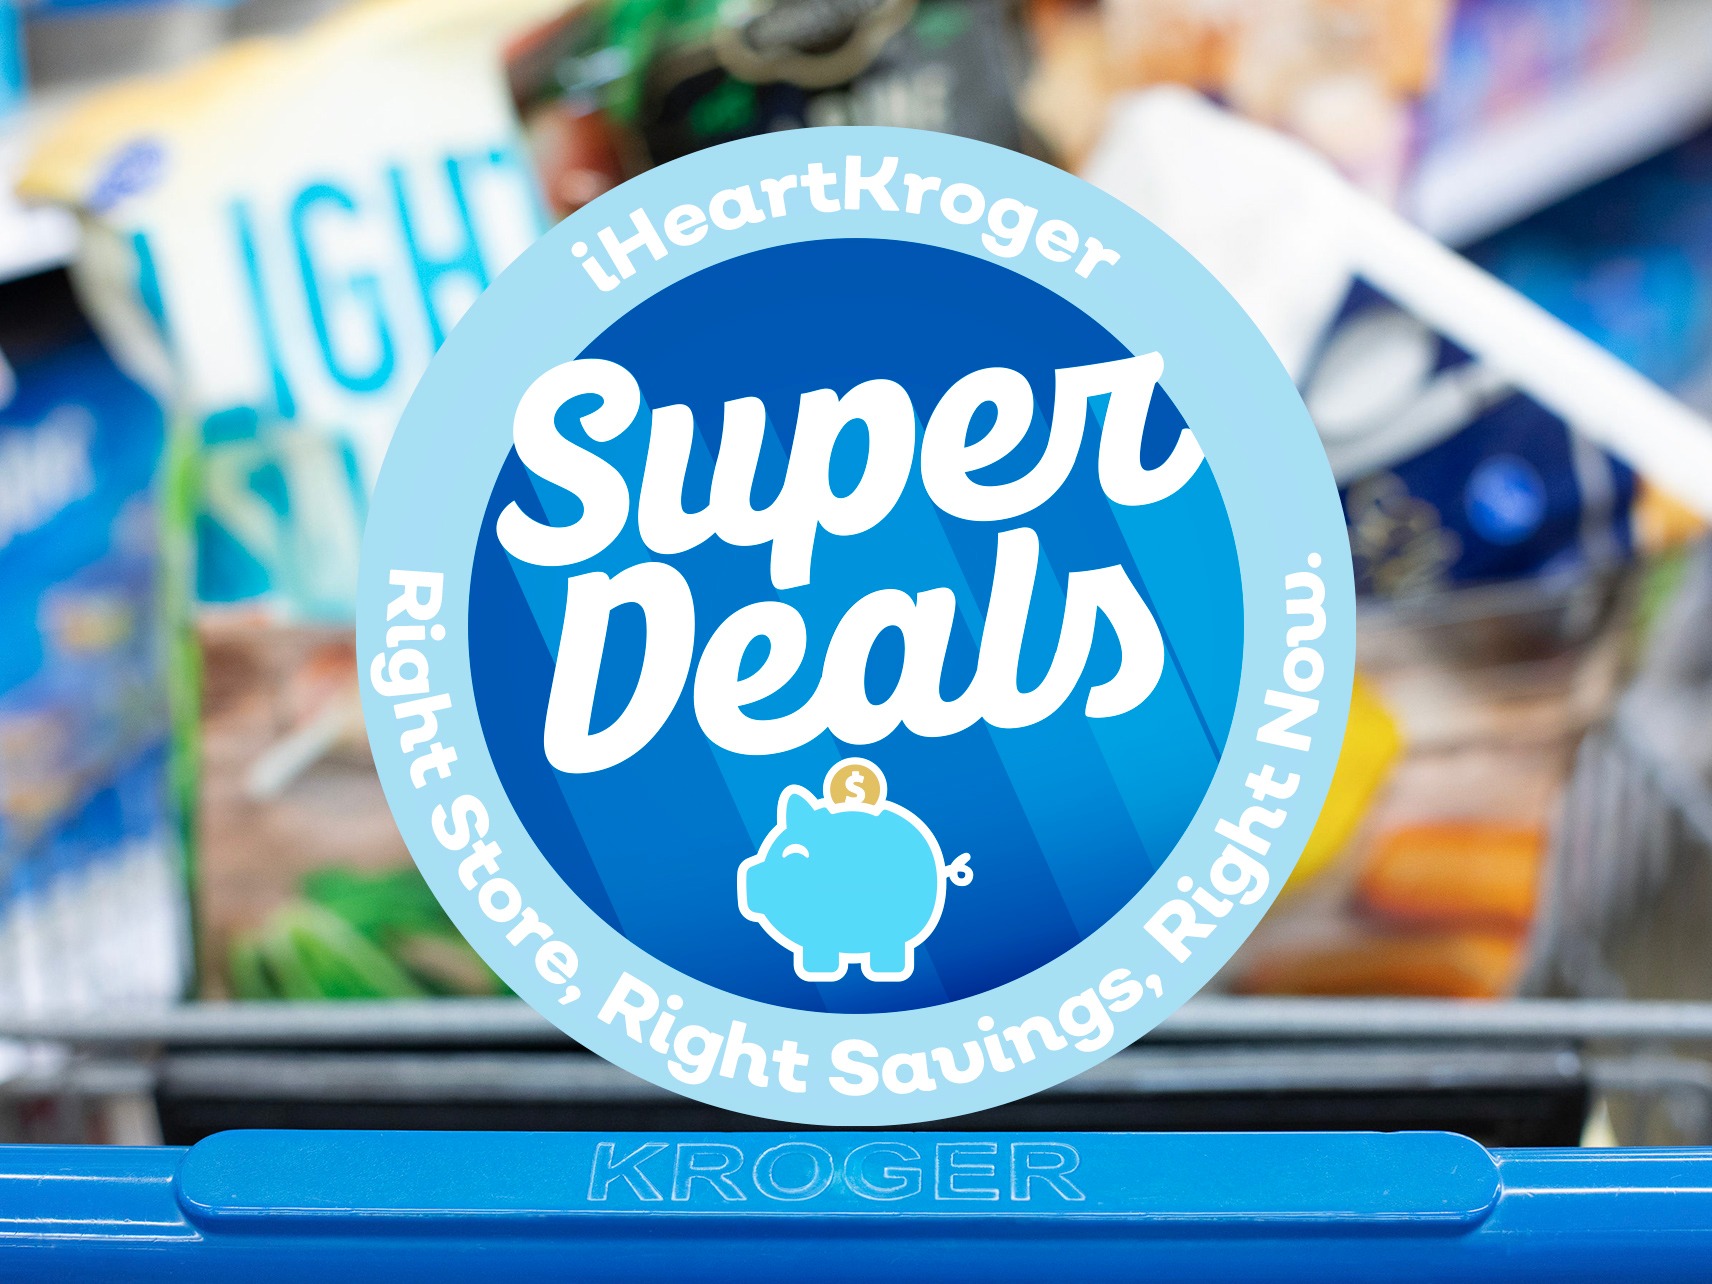 Kroger Super Deals Week Of 11/16 to 11/24